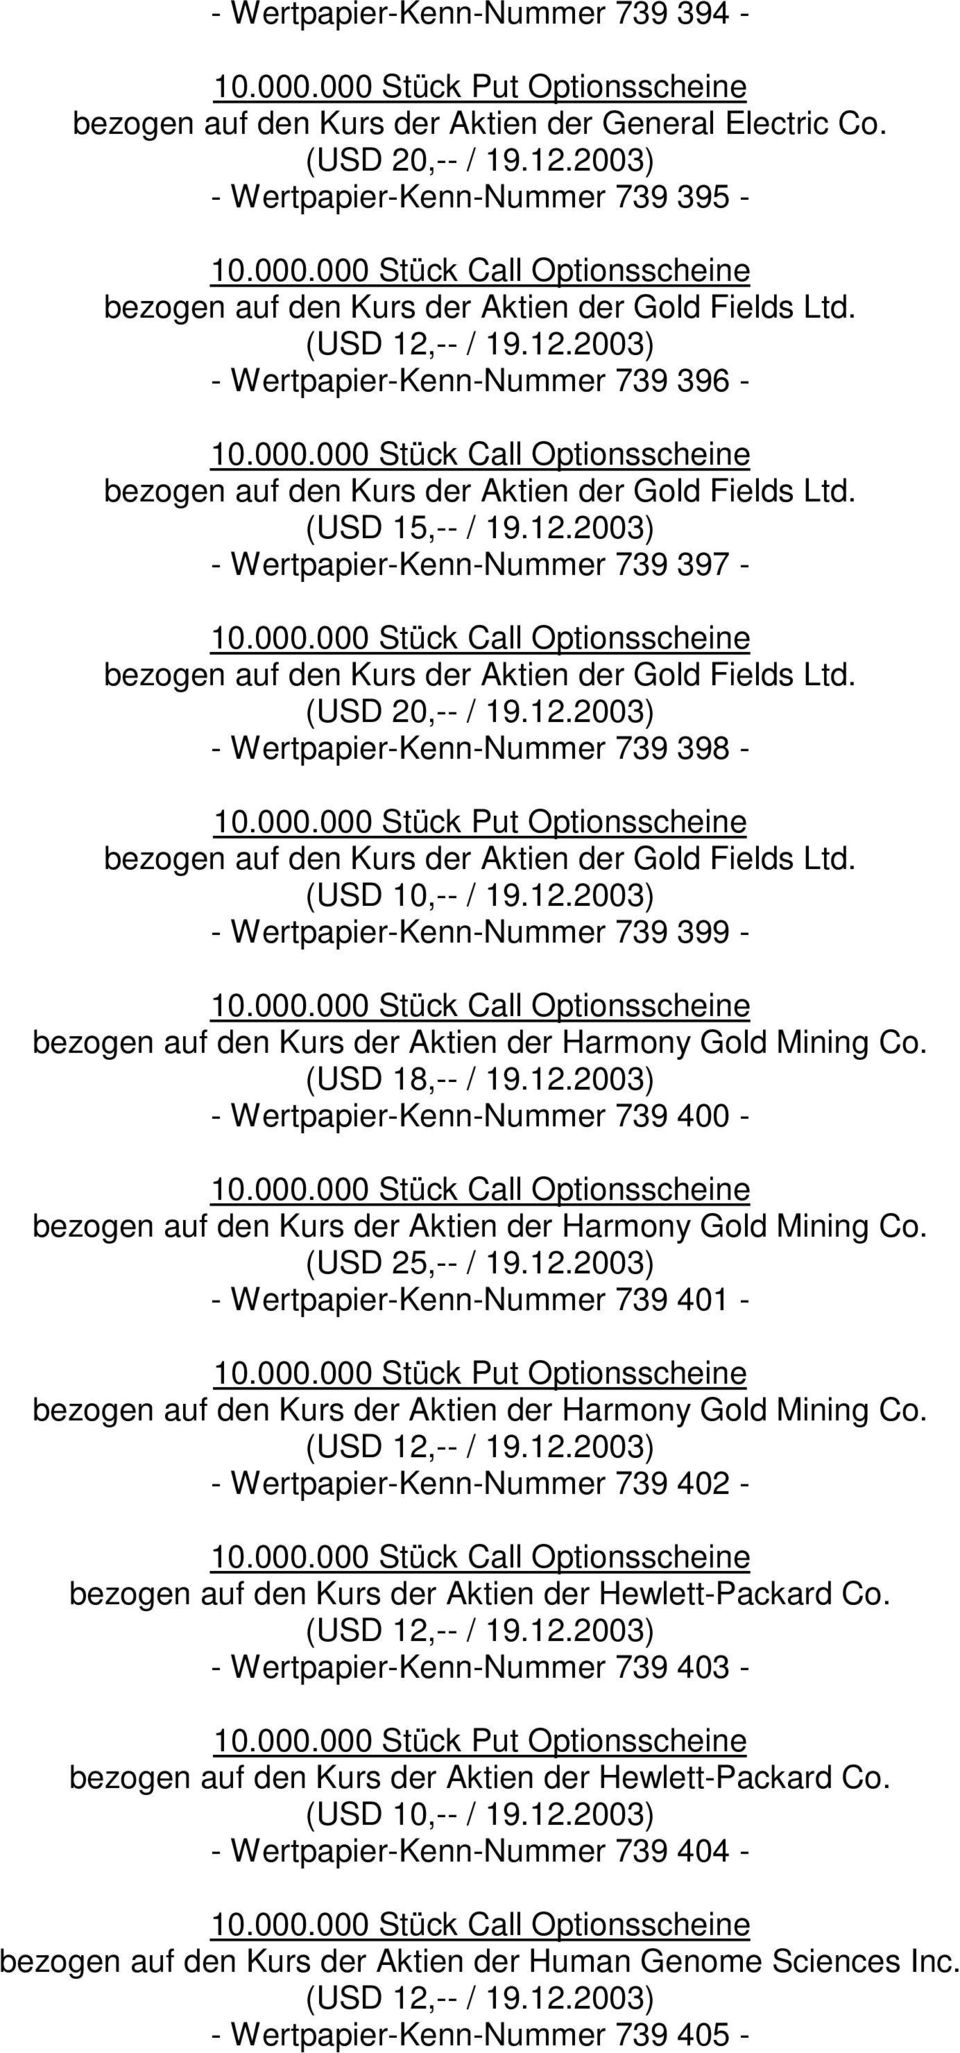 (USD 15,-- / 19.12.2003) - Wertpapier-Kenn-Nummer 739 397 - bezogen auf den Kurs der Aktien der Gold Fields Ltd. (USD 20,-- / 19.12.2003) - Wertpapier-Kenn-Nummer 739 398 - bezogen auf den Kurs der Aktien der Gold Fields Ltd.